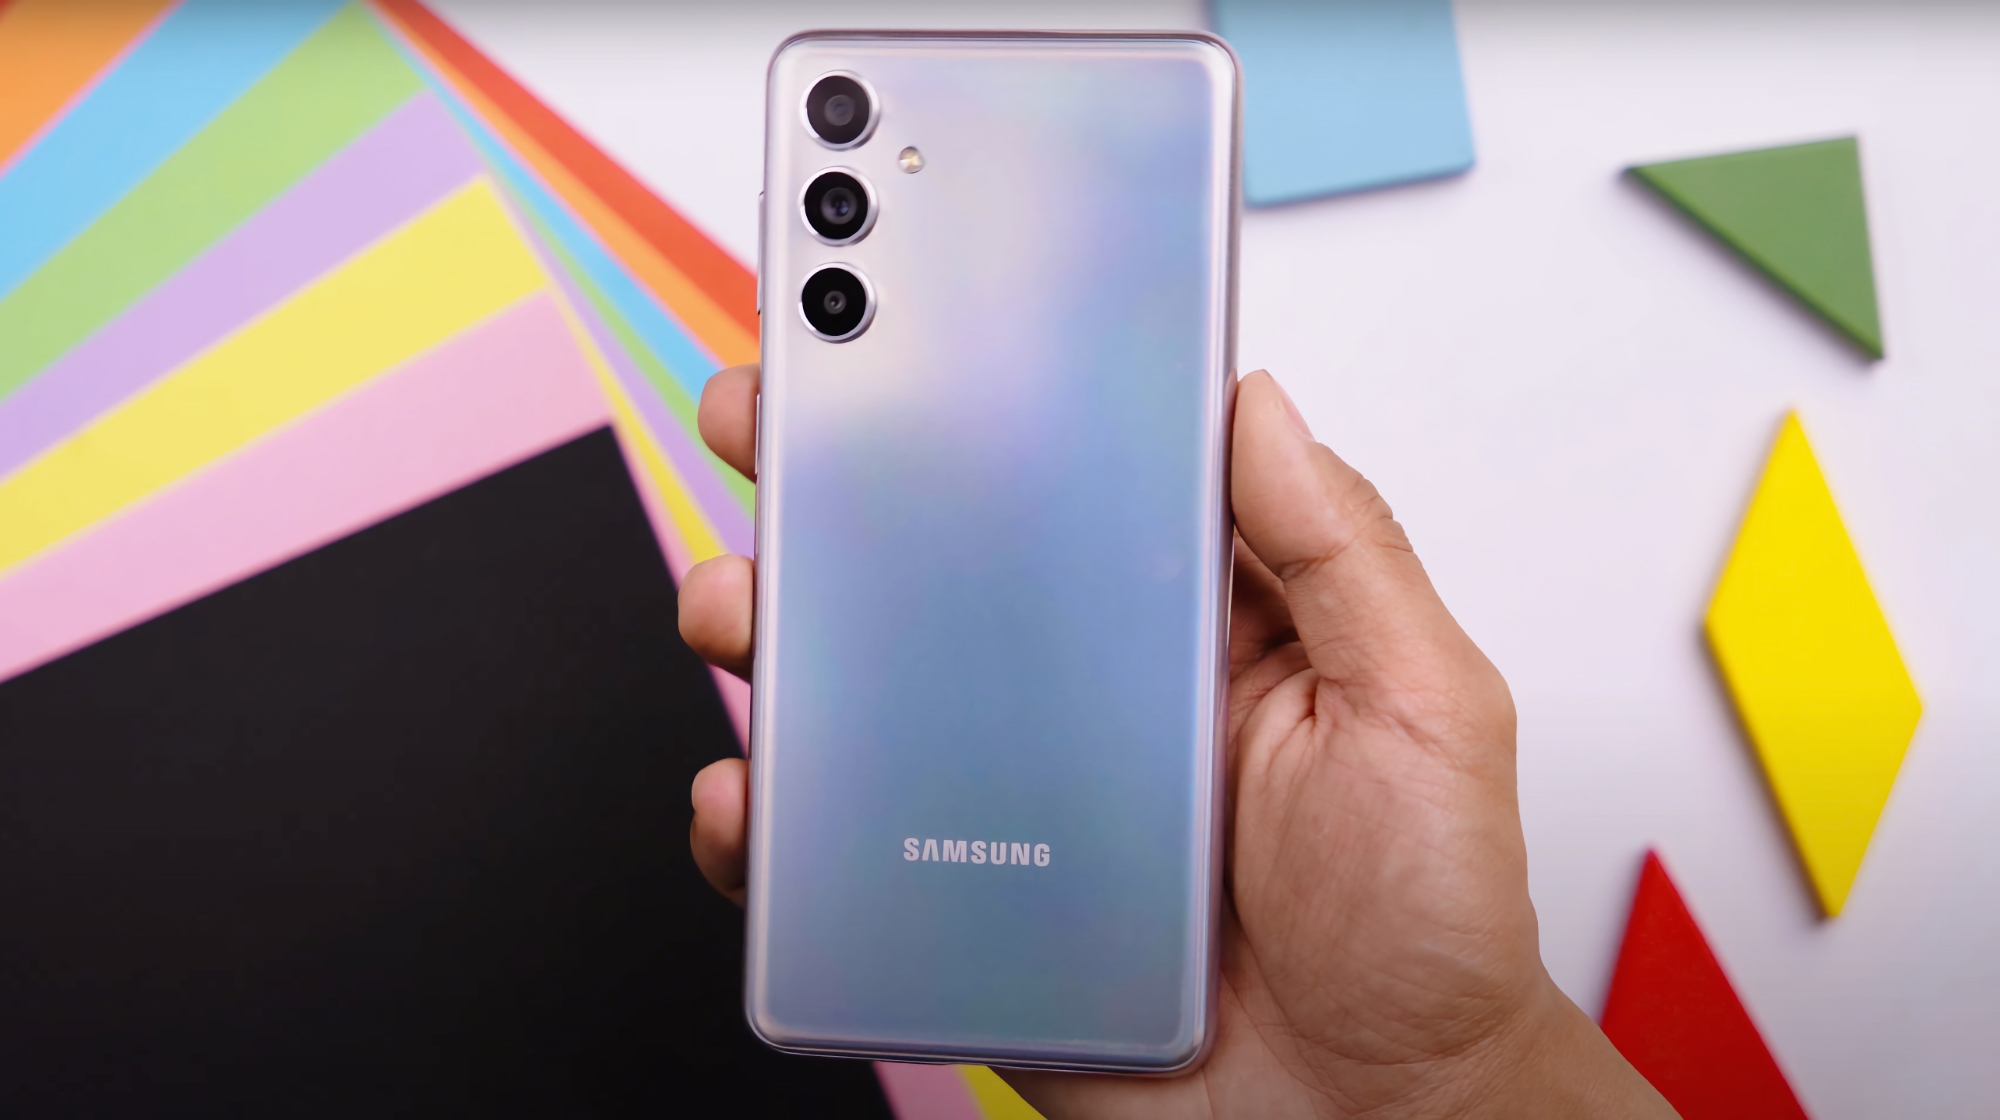 En video av den oannonserade Samsung Galaxy F54-smarttelefonen har dykt upp på YouTube